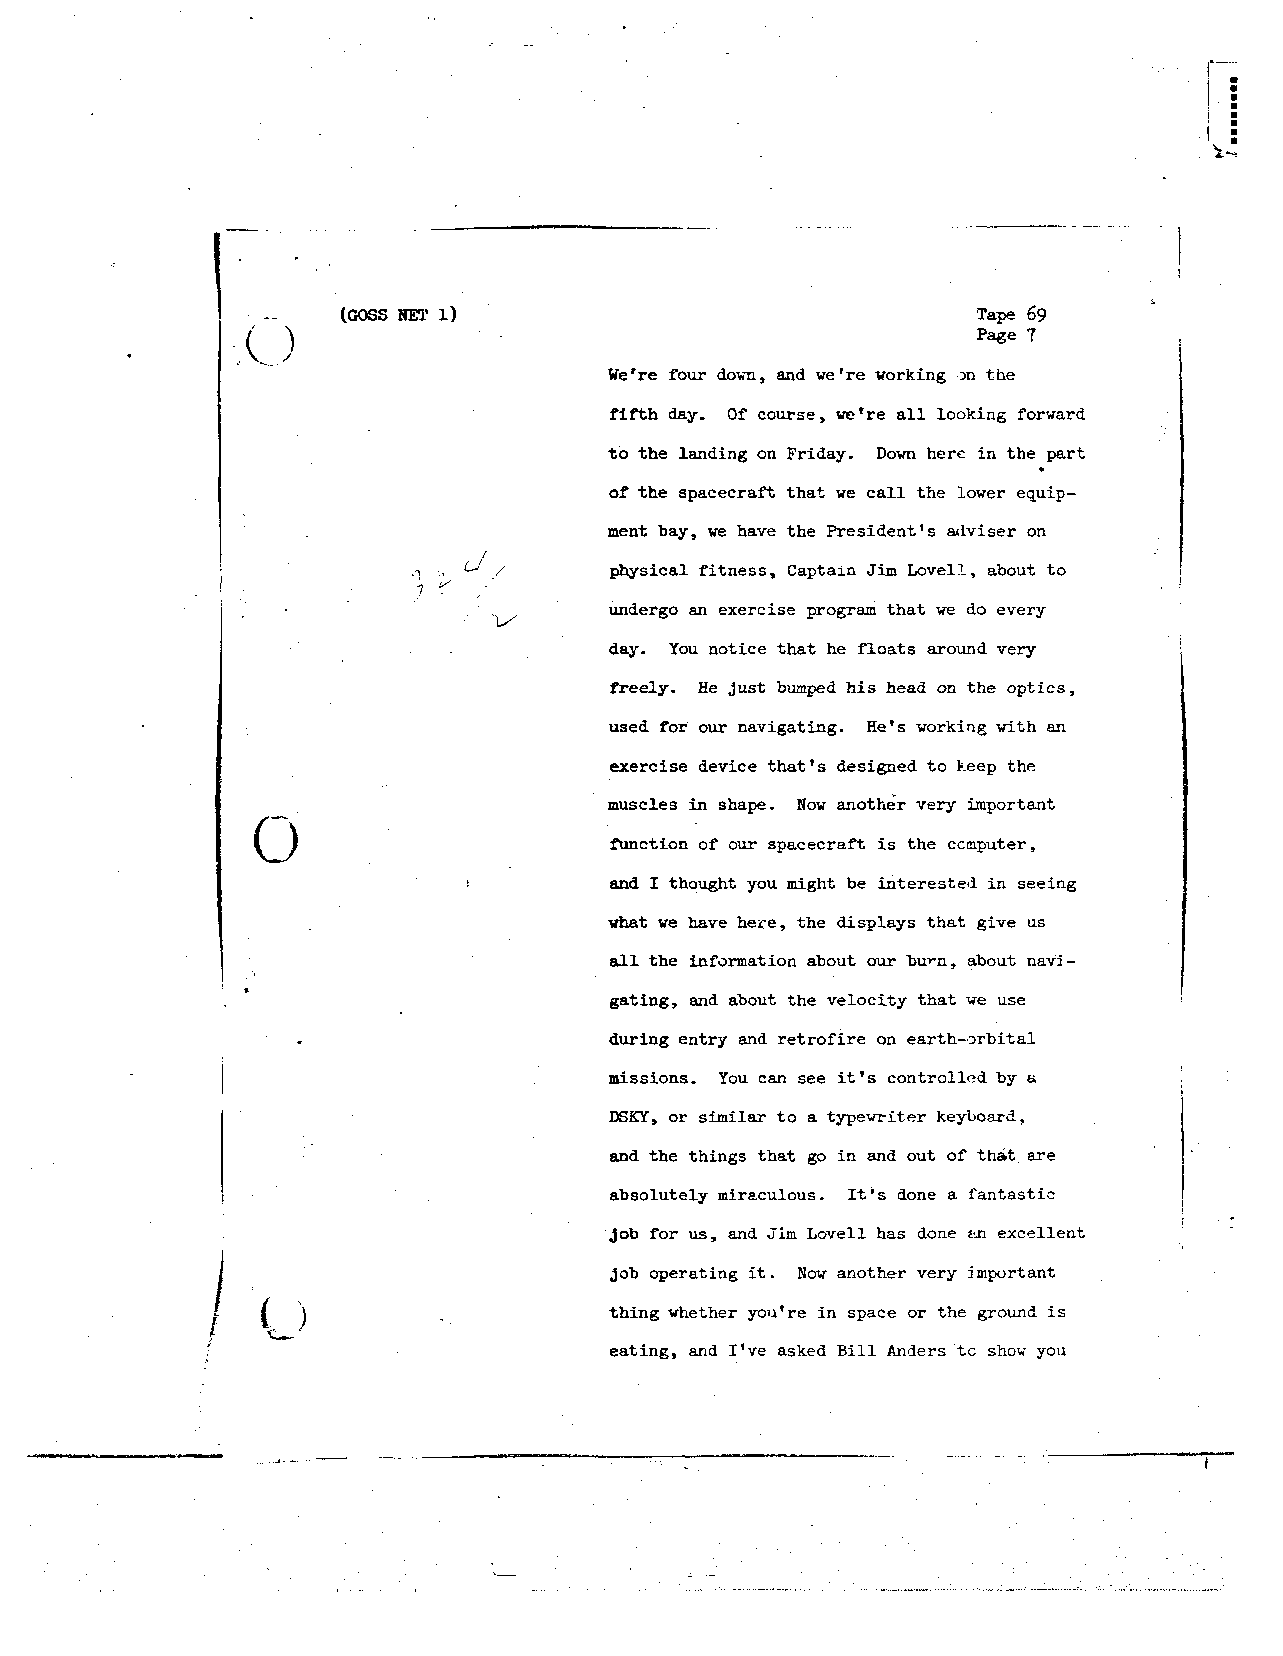 Page 553 of Apollo 8’s original transcript